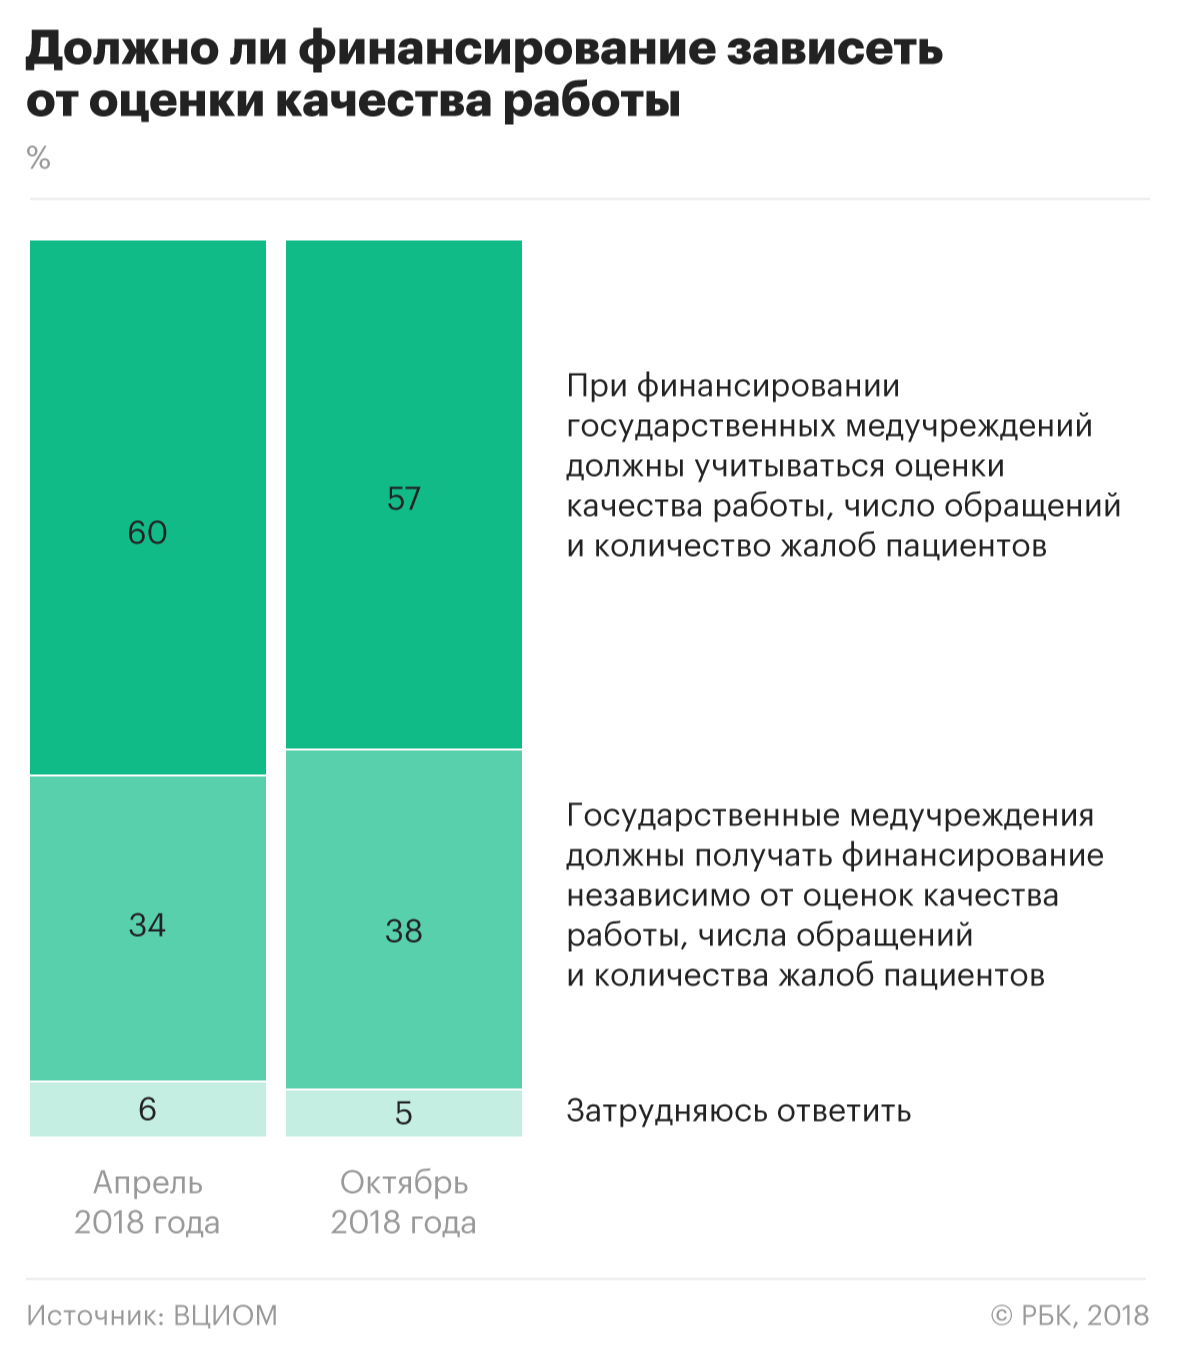 ВЦИОМ сообщил о желании россиян влиять на работу врачей через зарплату